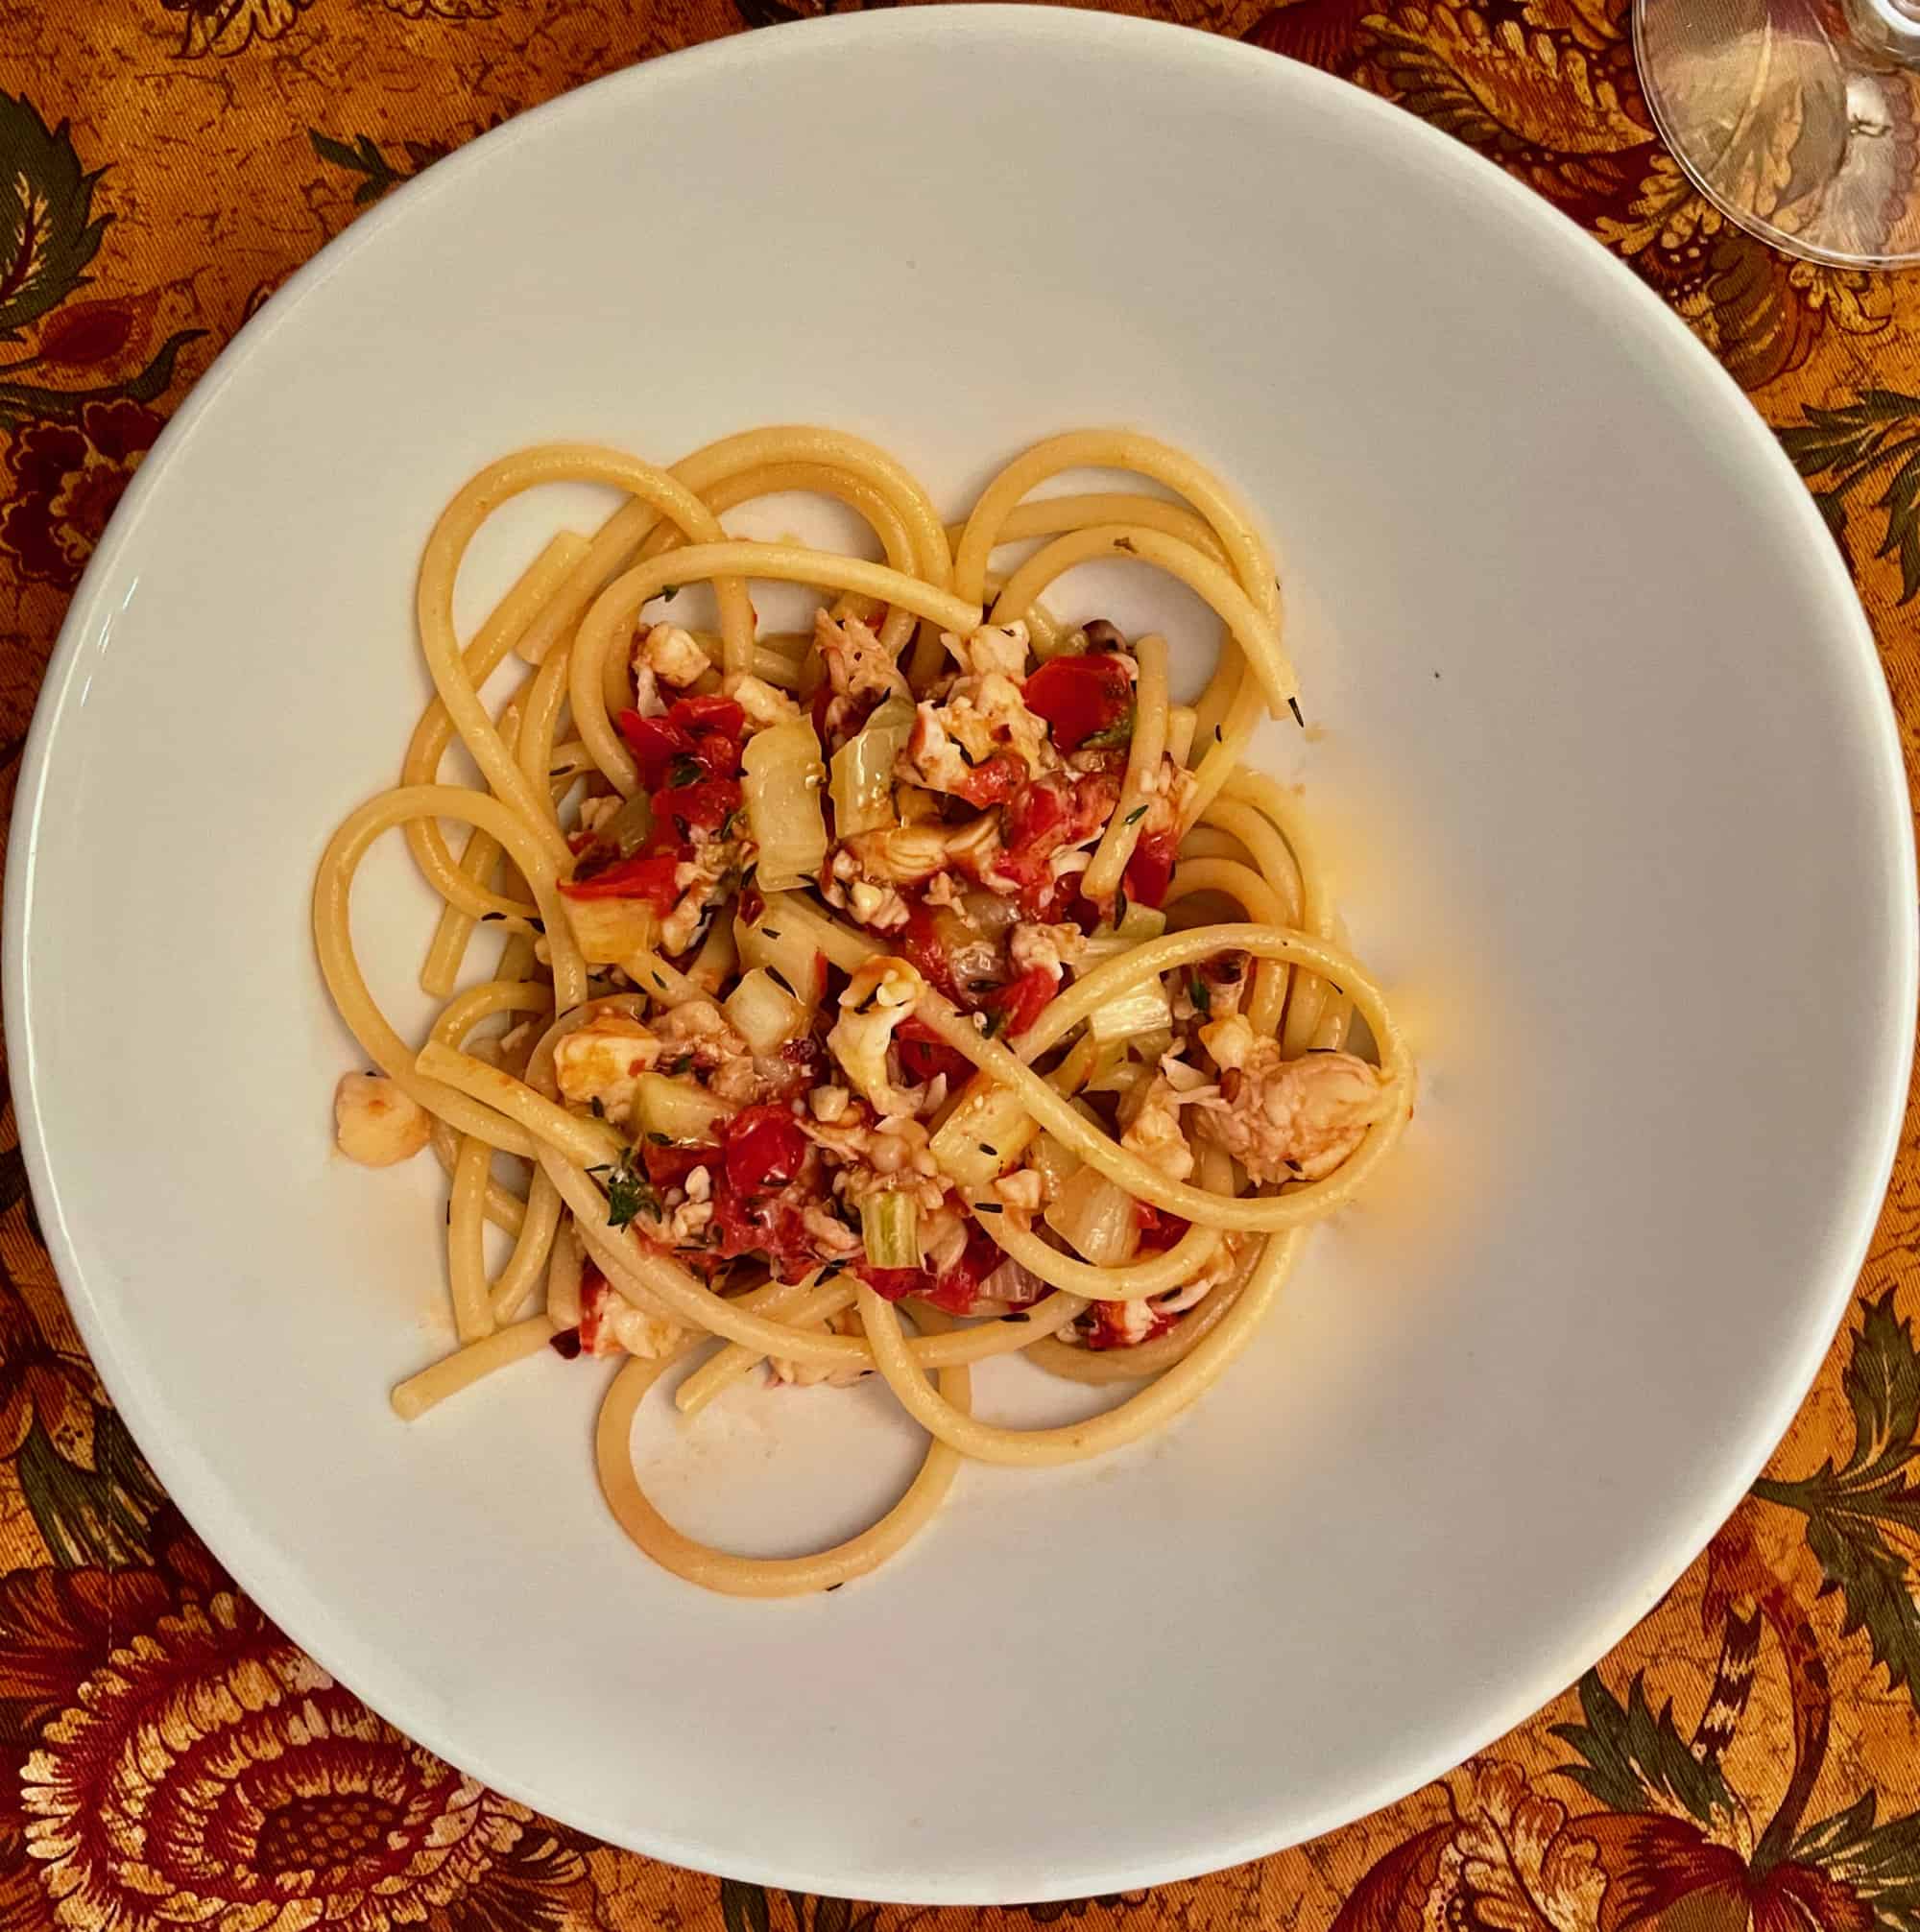 Let’s make Astakomakaronada. That’s Greek for “Lobster Spaghetti”